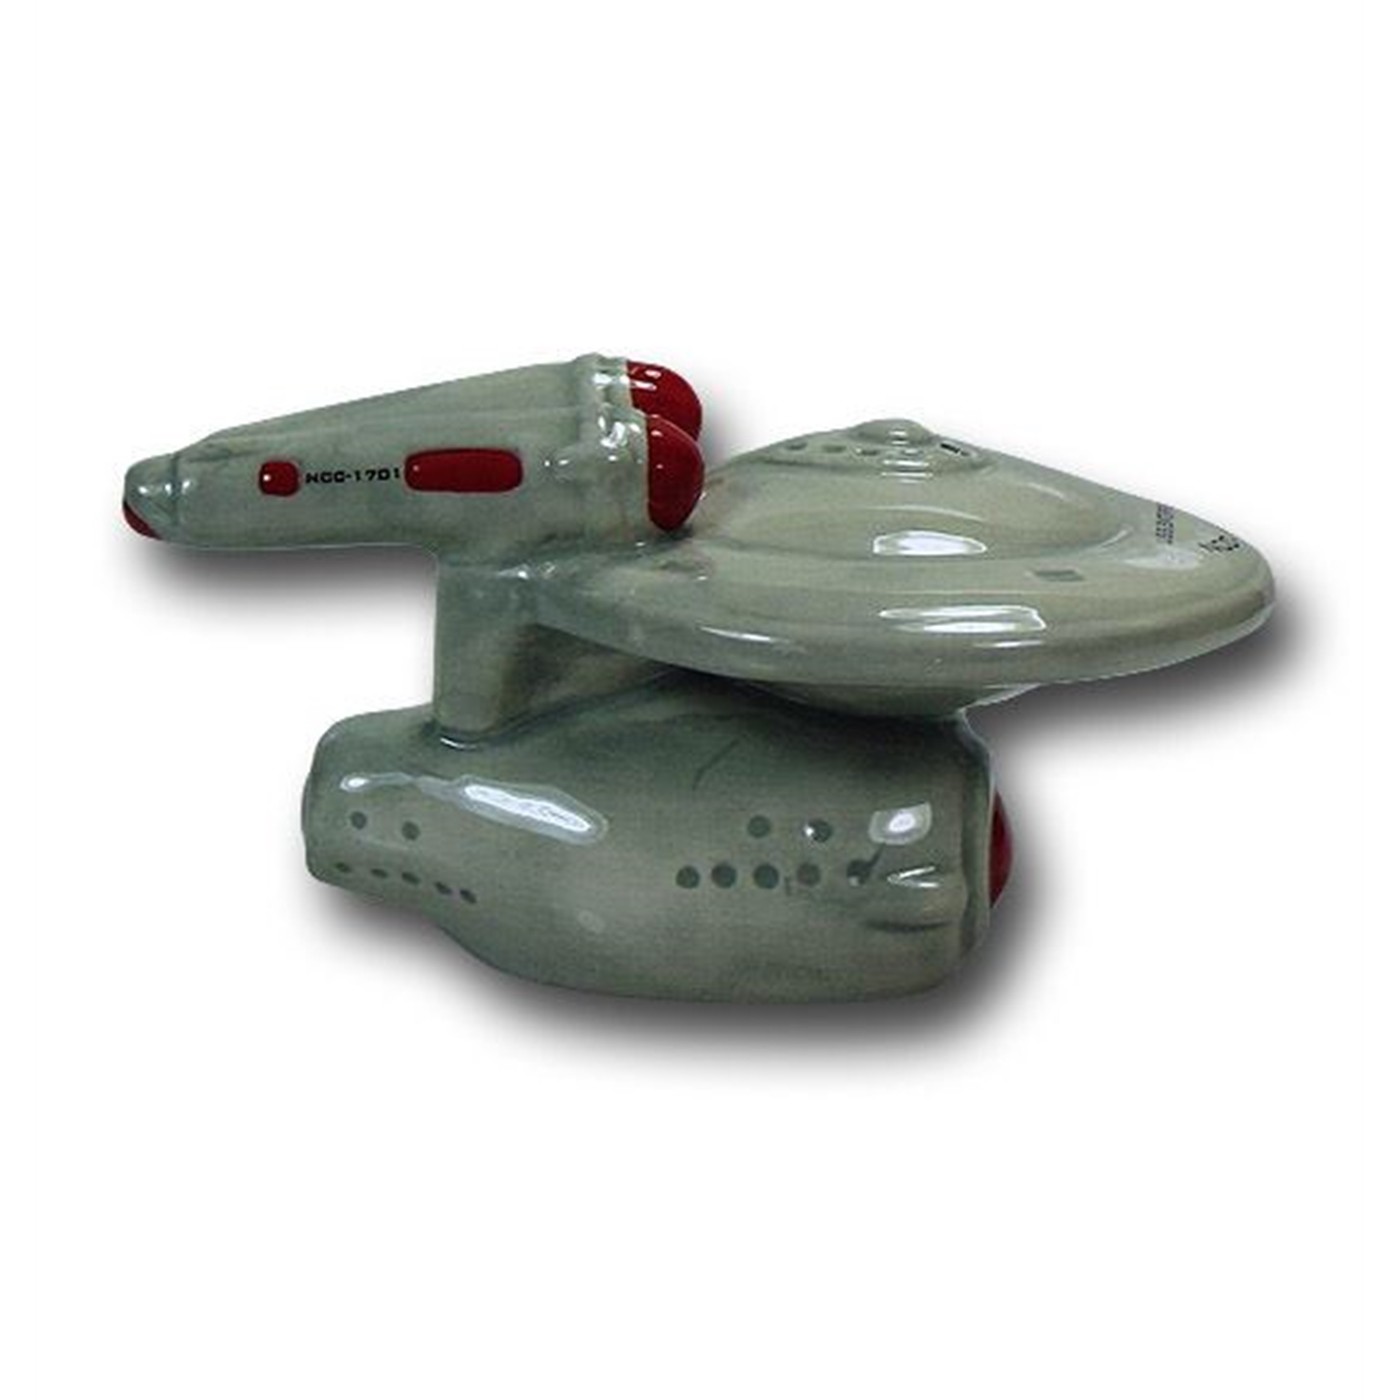 Star Trek Ships Salt and Pepper Shakers